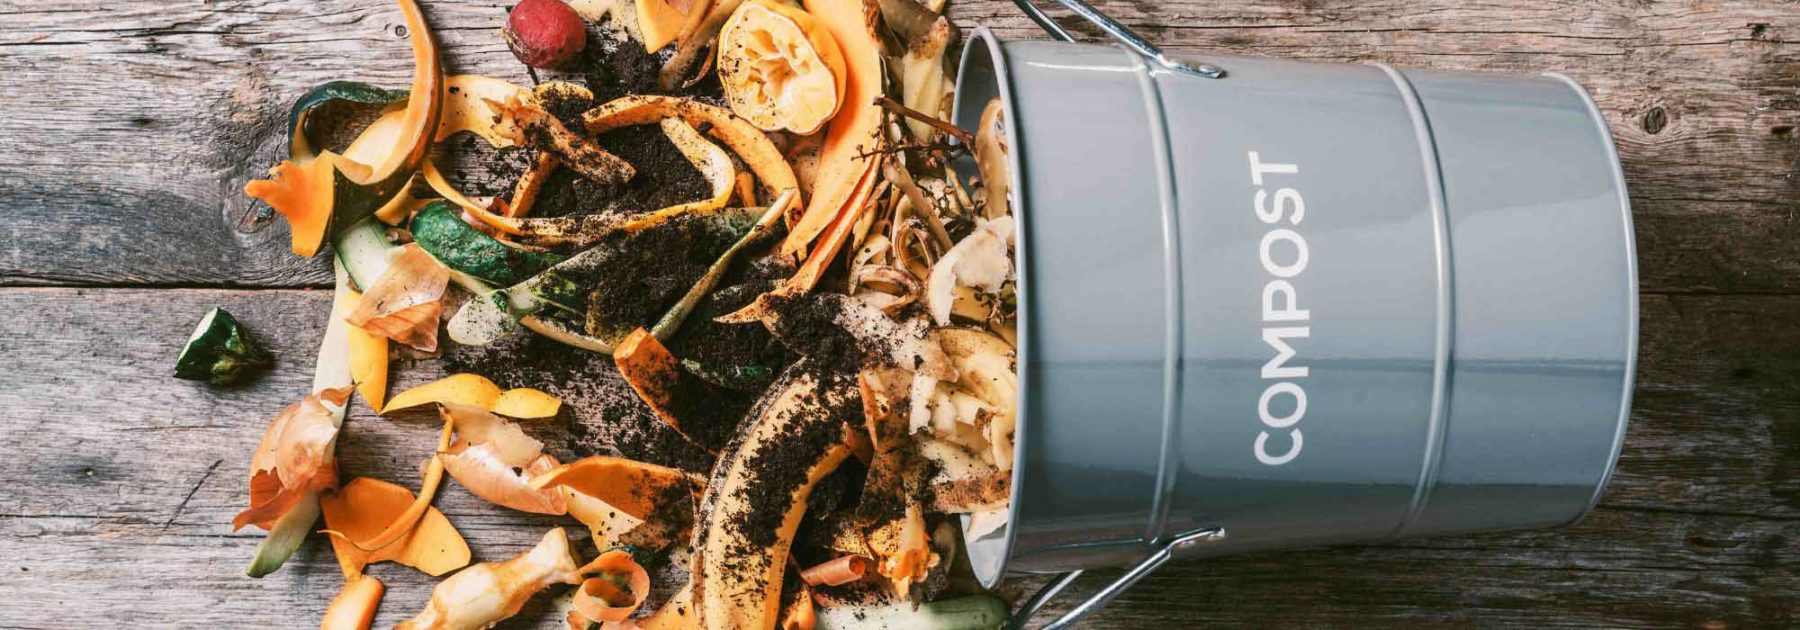 Thé de compost : recette et utilisation au jardin